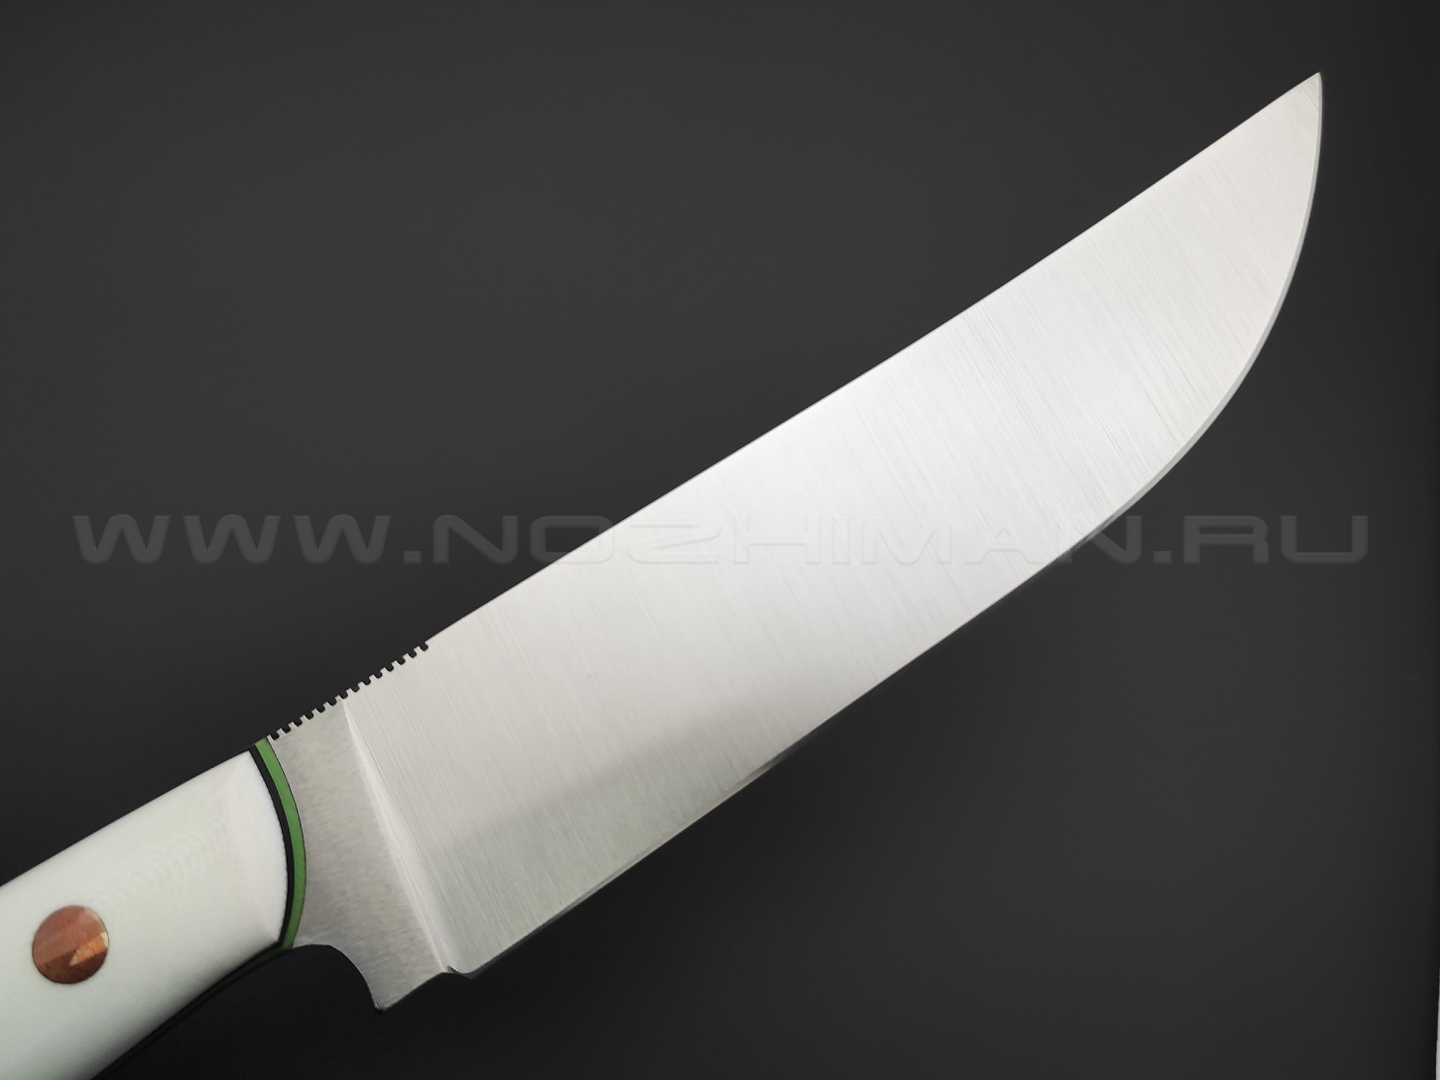 7 ножей нож Техно Пчак сталь VG-10 satin, рукоять G10 white